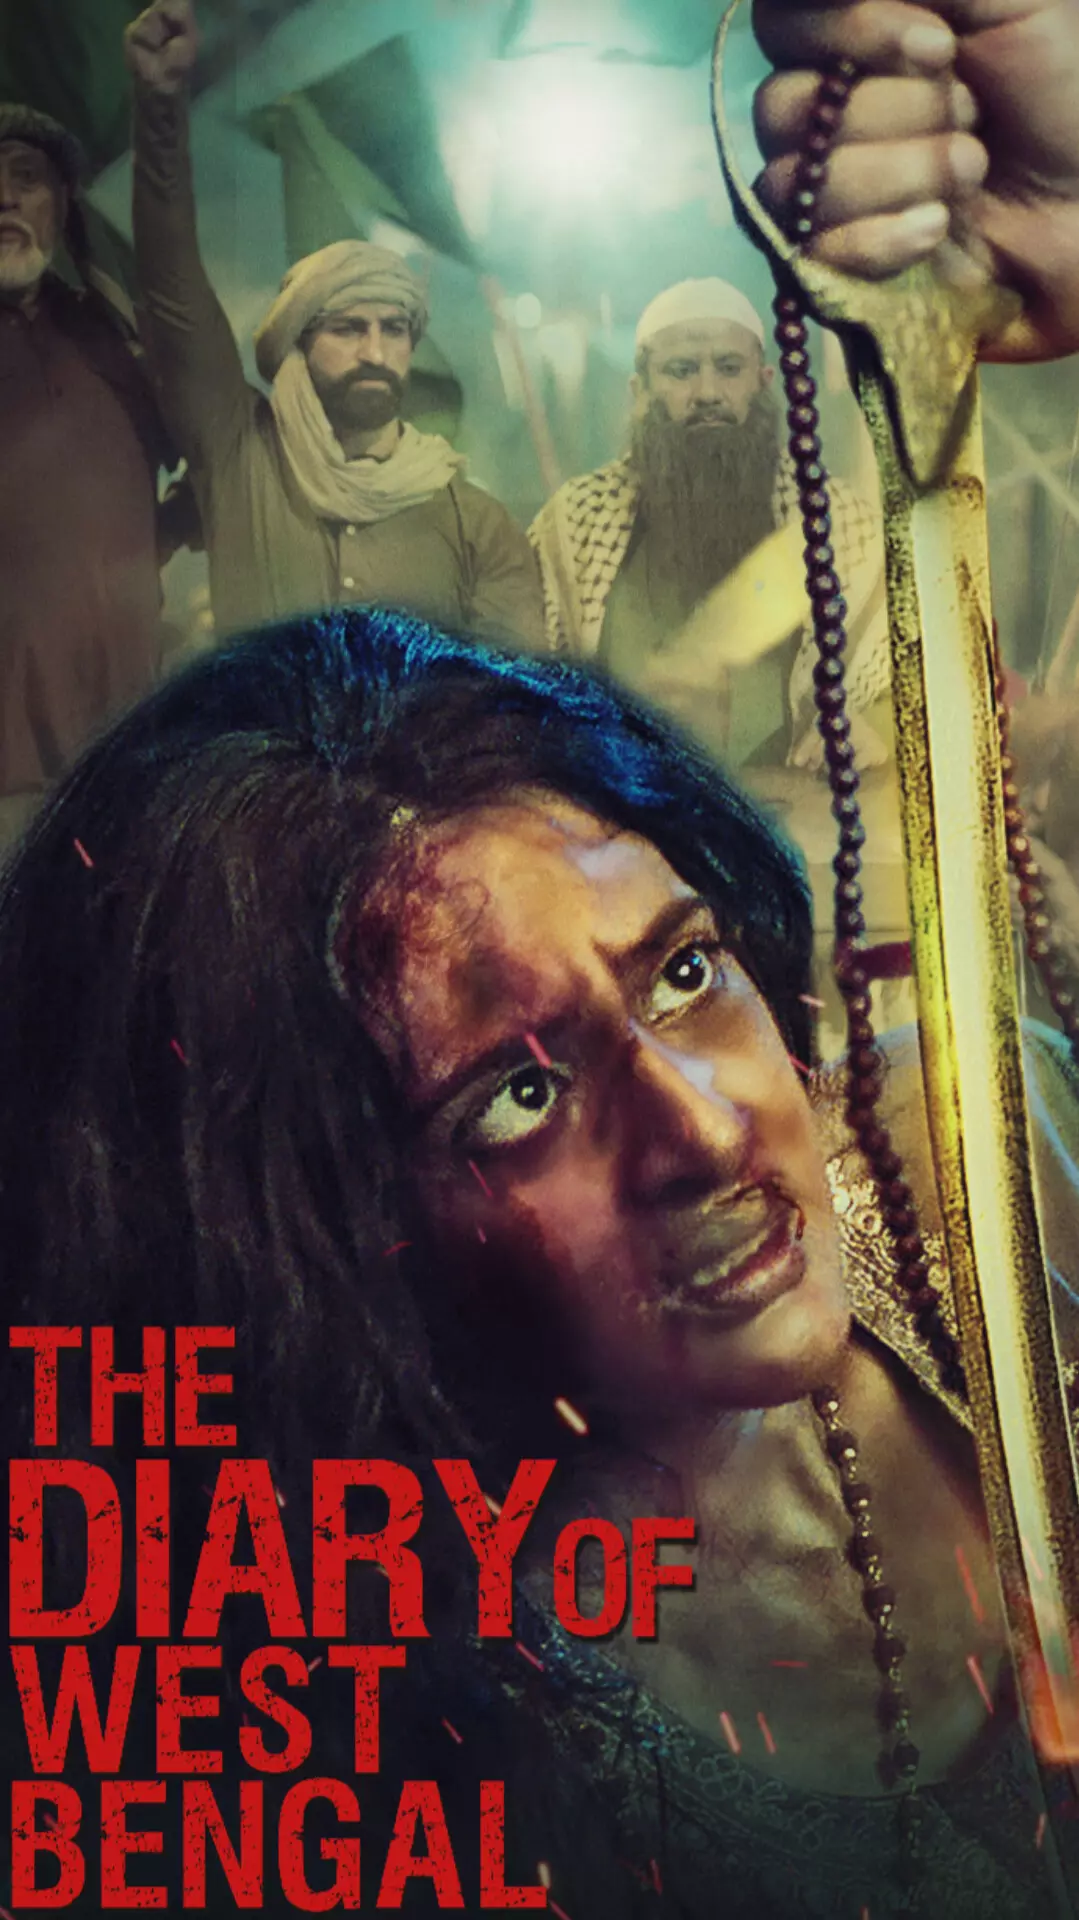 द डायरी ऑफ वेस्ट बंगाल फिल्म रिलीज में अड़चन, फिल्म निर्माता नाराज